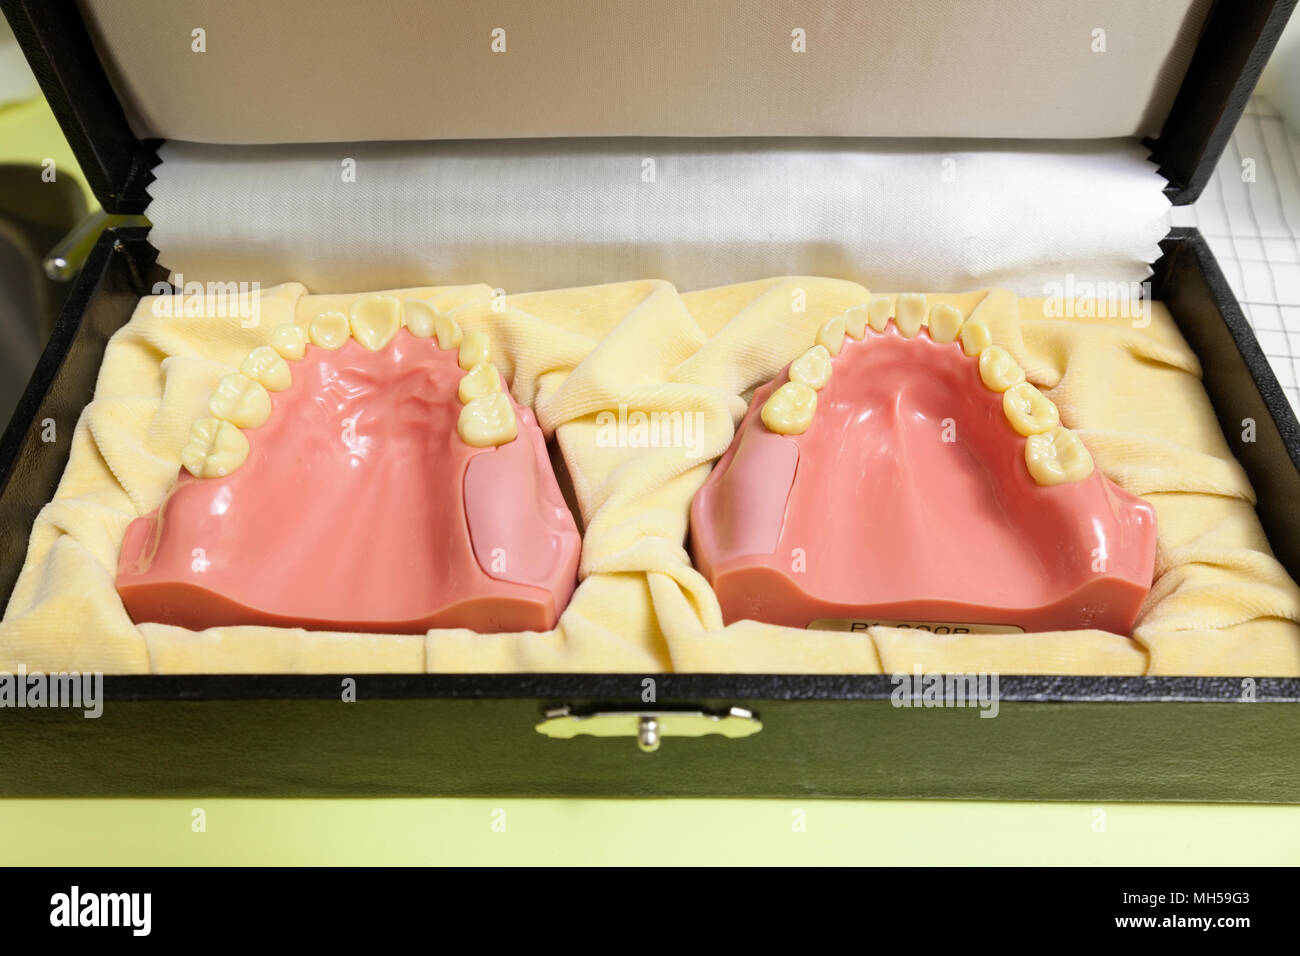 Un modèle de soins dentaires de la bouche et des dents. Banque D'Images